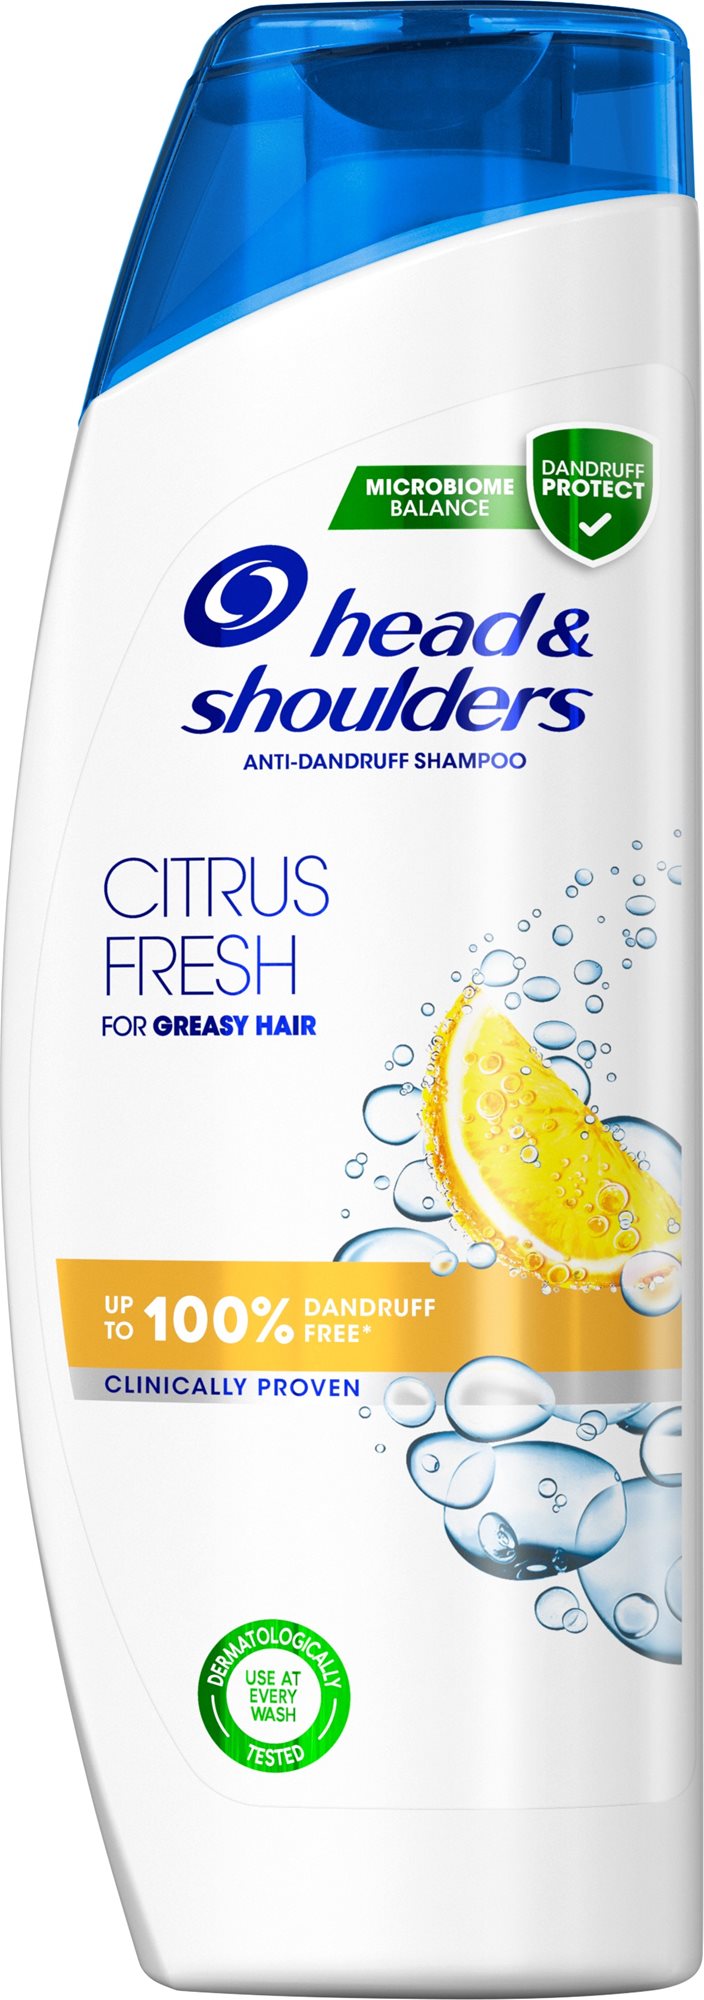 Sampon HEAD&SHOULDERS Citrus sampon 540 ml